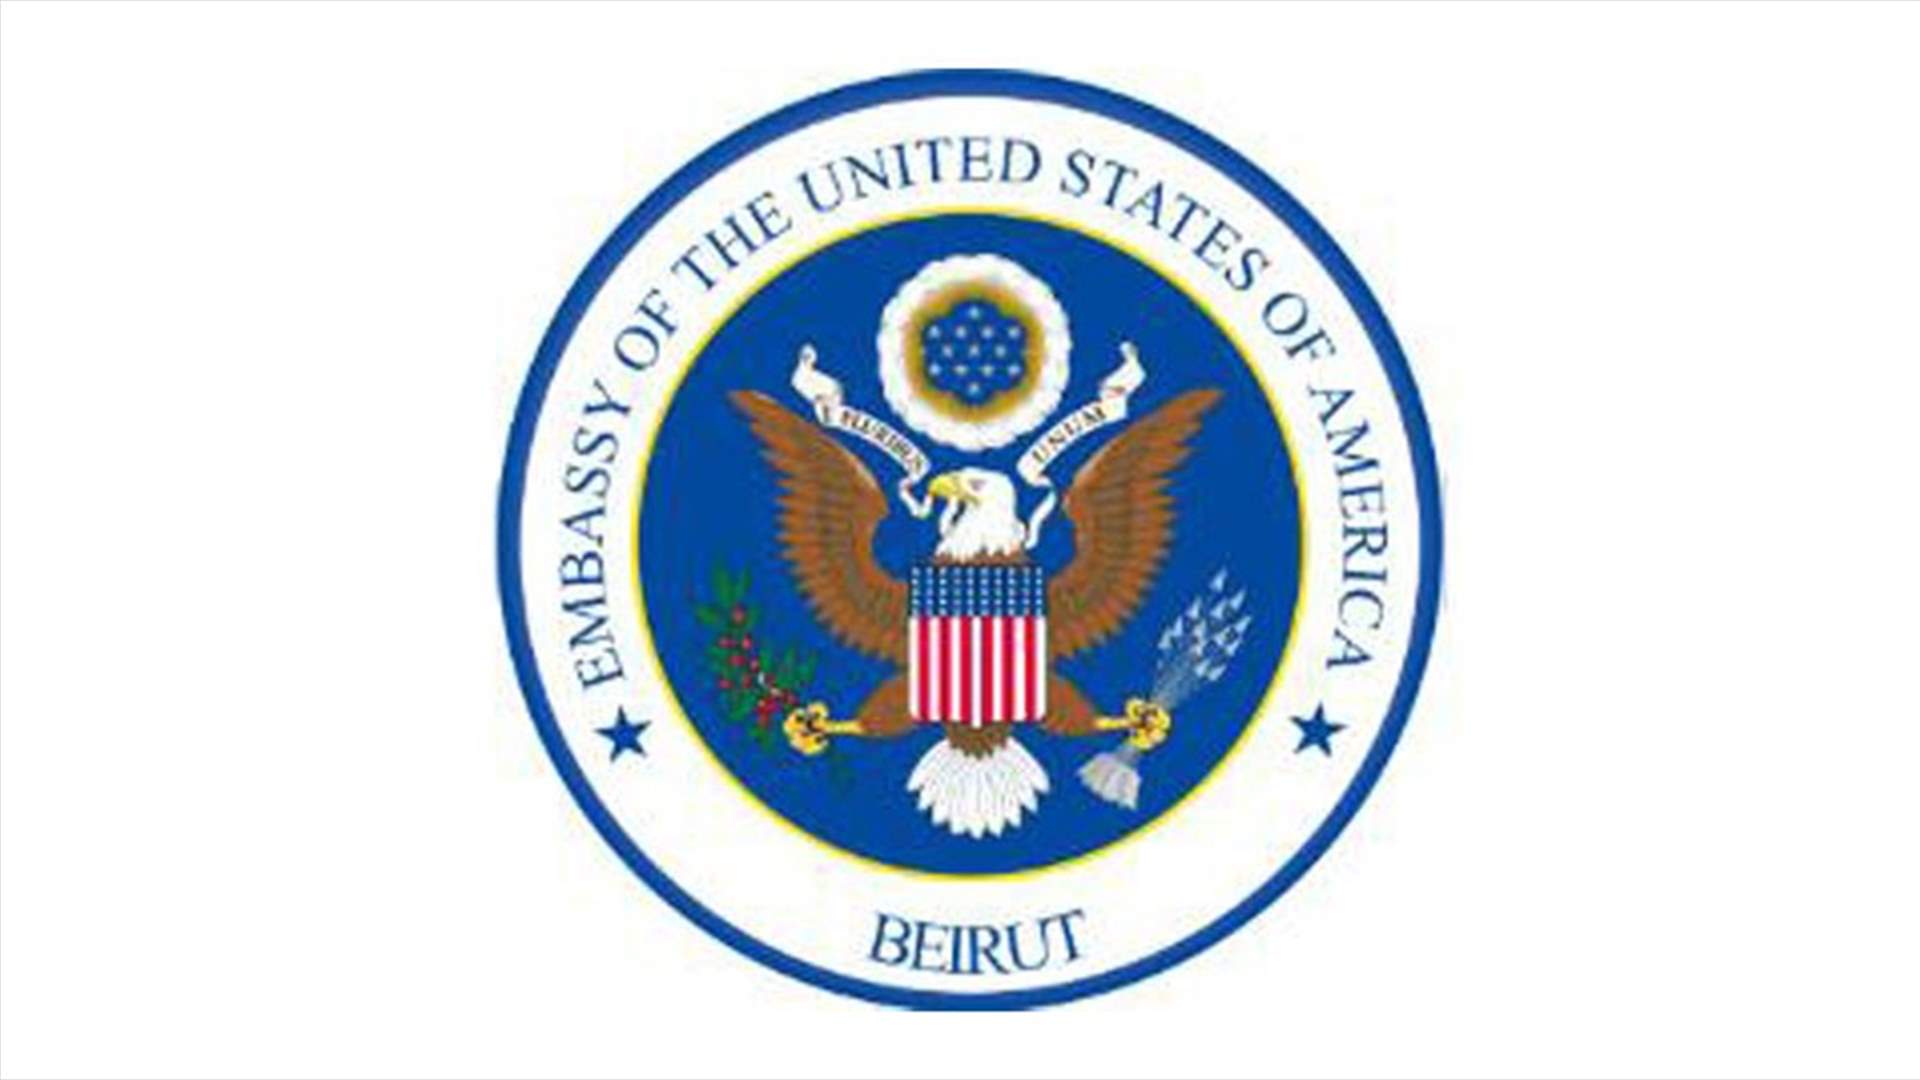 السفارة الأميركية تعلن عن برنامج الفولبرايت للدراسات العليا ٢٠١٨ - ٢٠٢٠